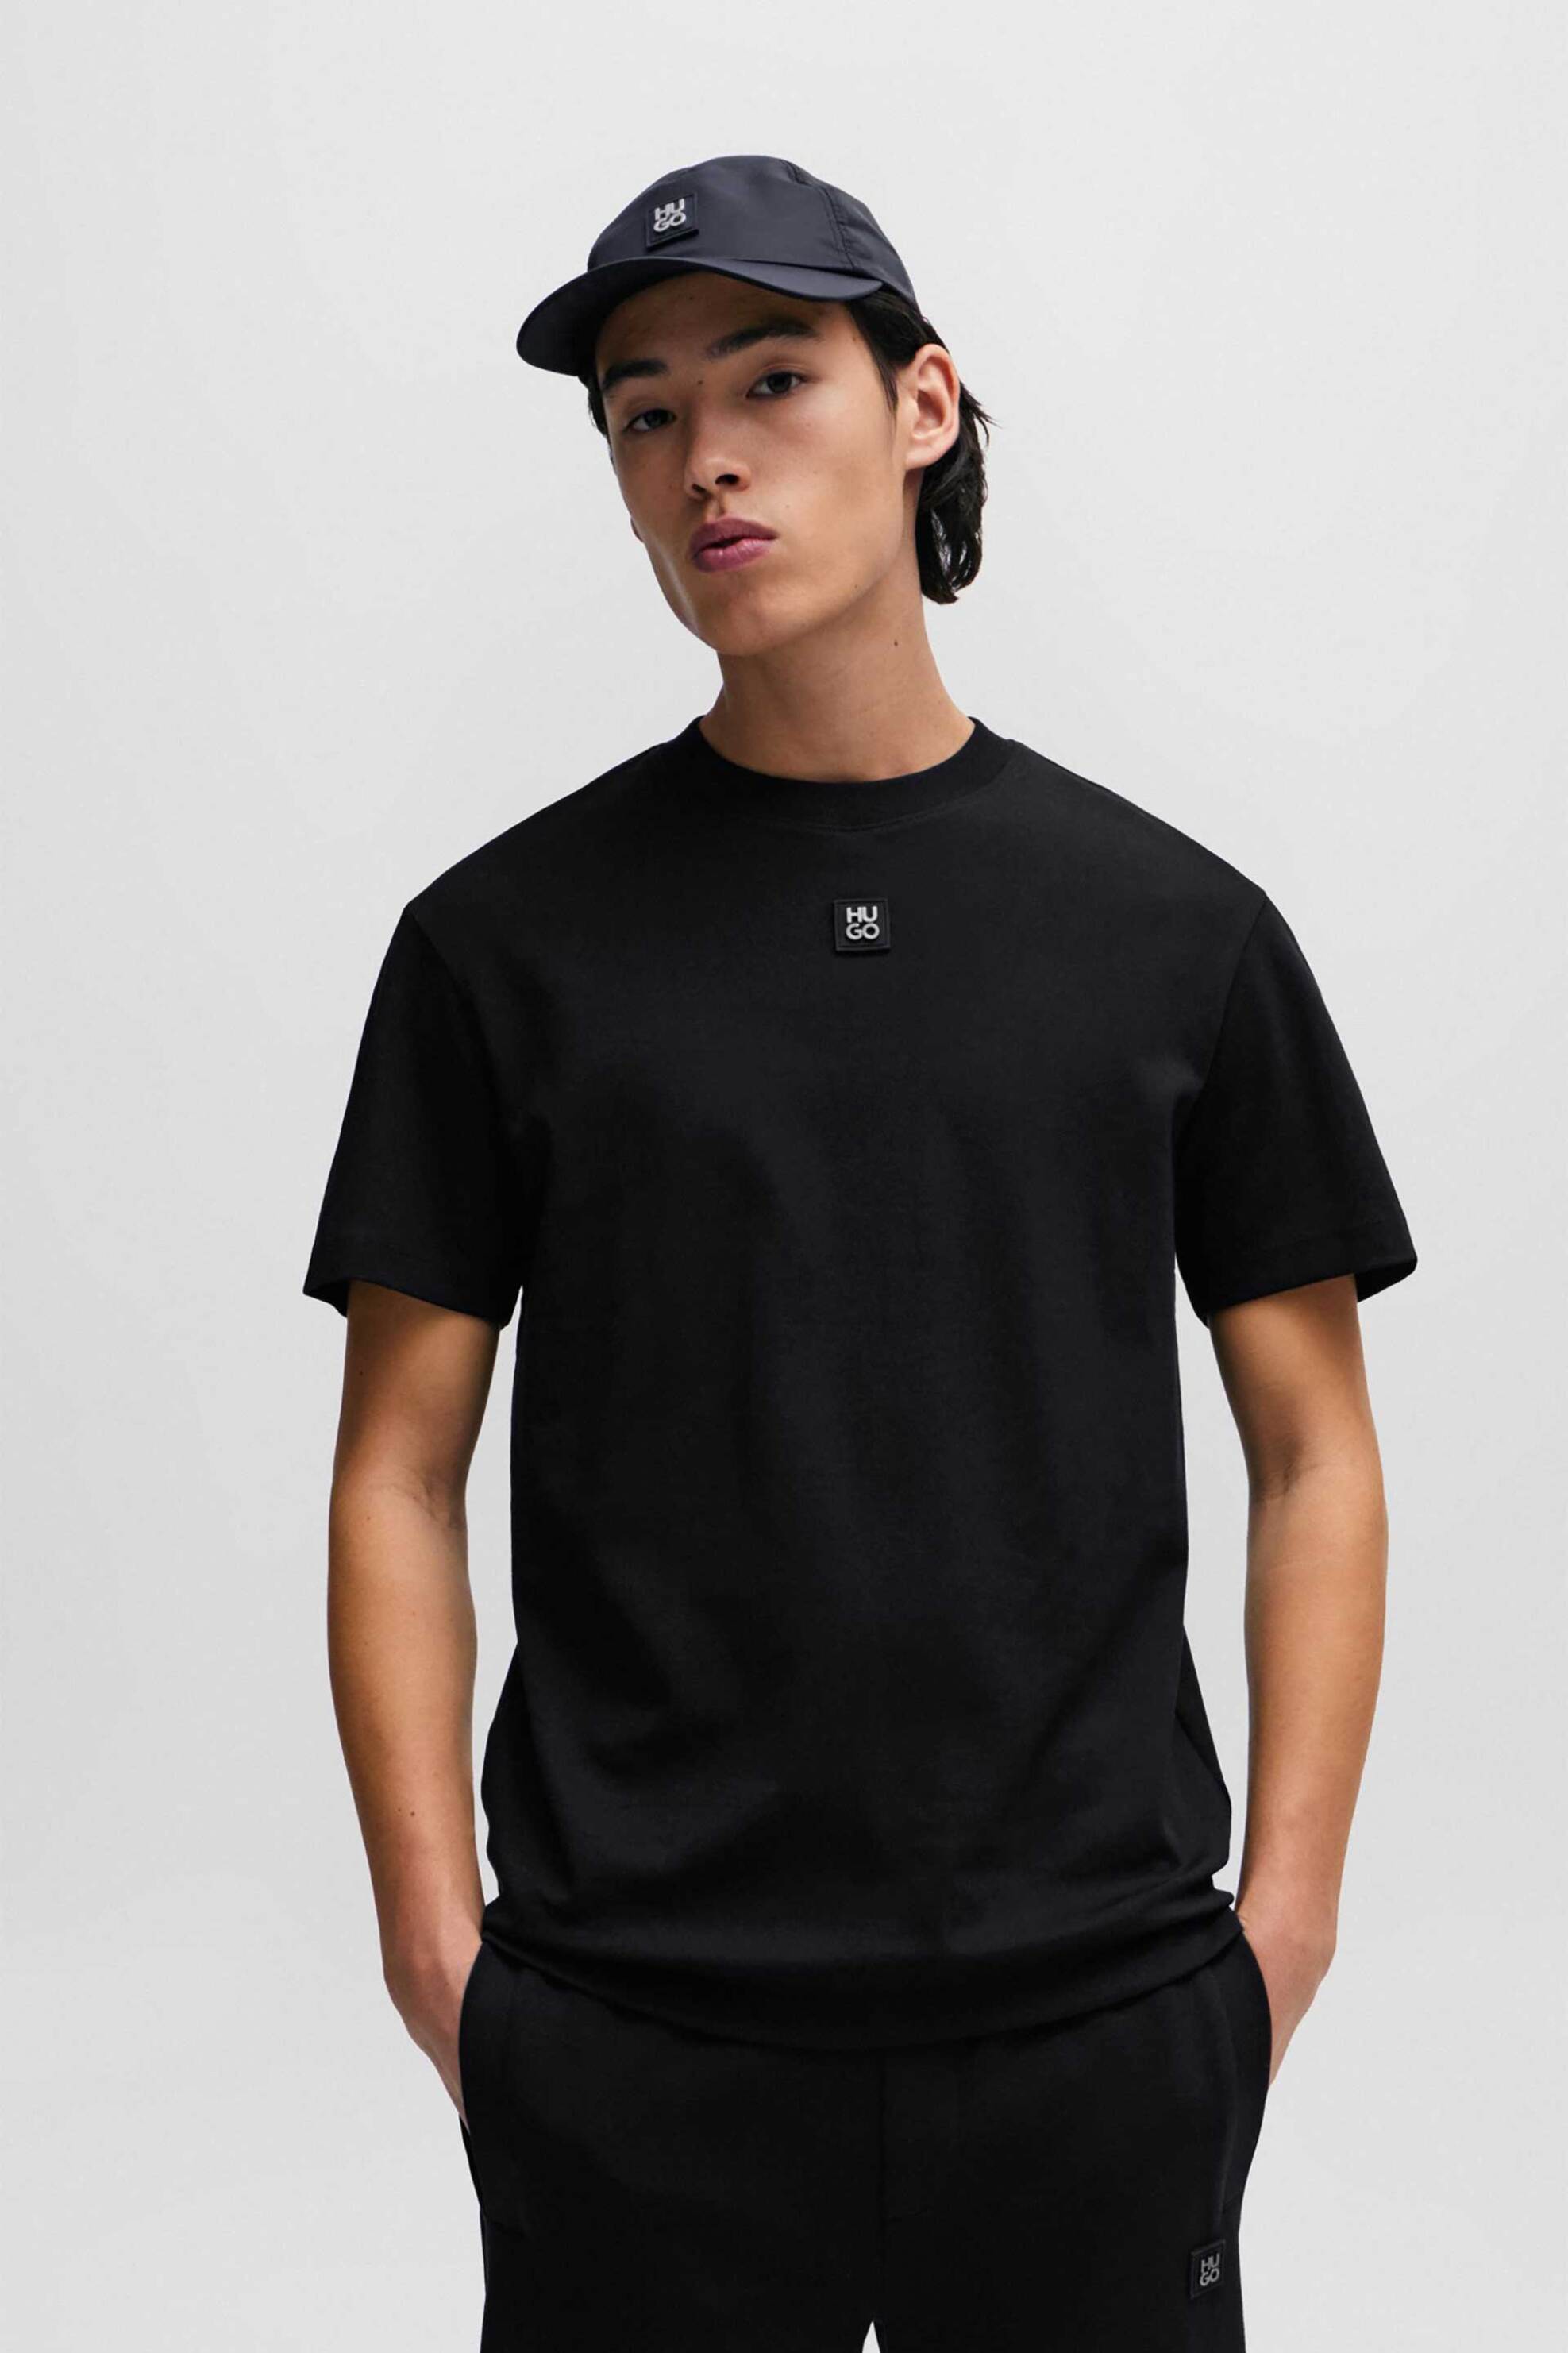 Ανδρική Μόδα > Ανδρικά Ρούχα > Ανδρικές Μπλούζες > Ανδρικά T-Shirts Hugo Boss ανδρικό βαμβακερό T-shirt μονόχρωμο με ανάγλυφο logo patch "Dalile" - 50505201 Μαύρο